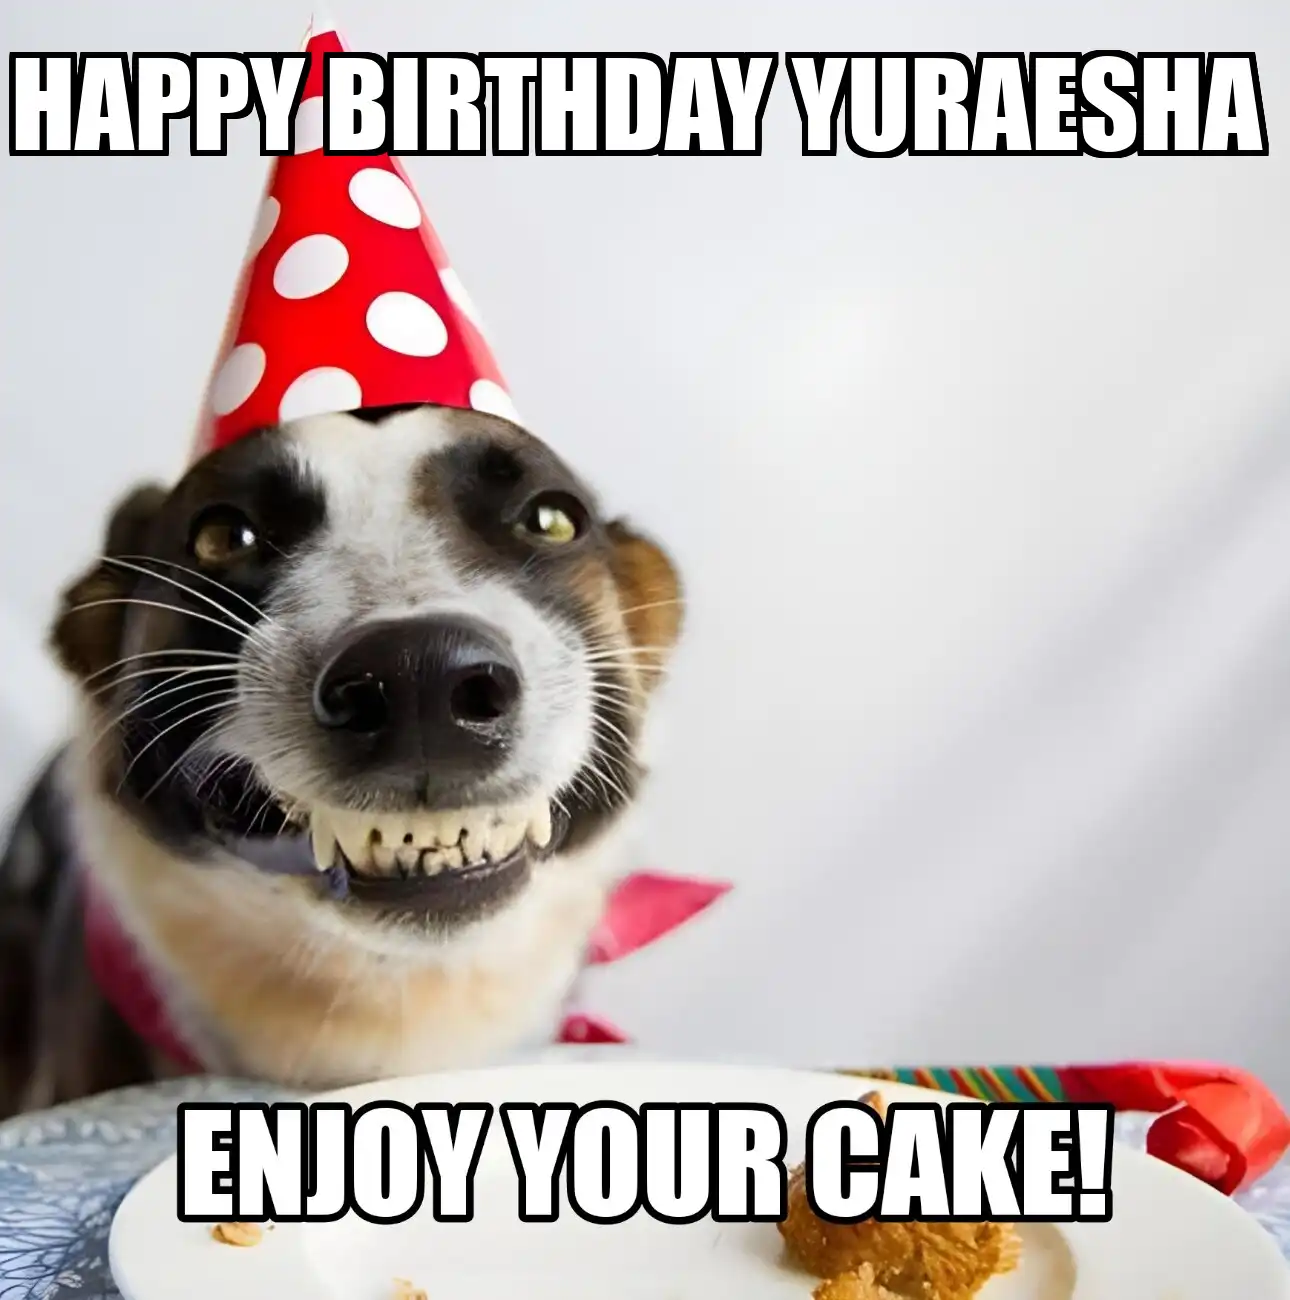 Happy Birthday Yuraesha Enjoy Your Cake Dog Meme